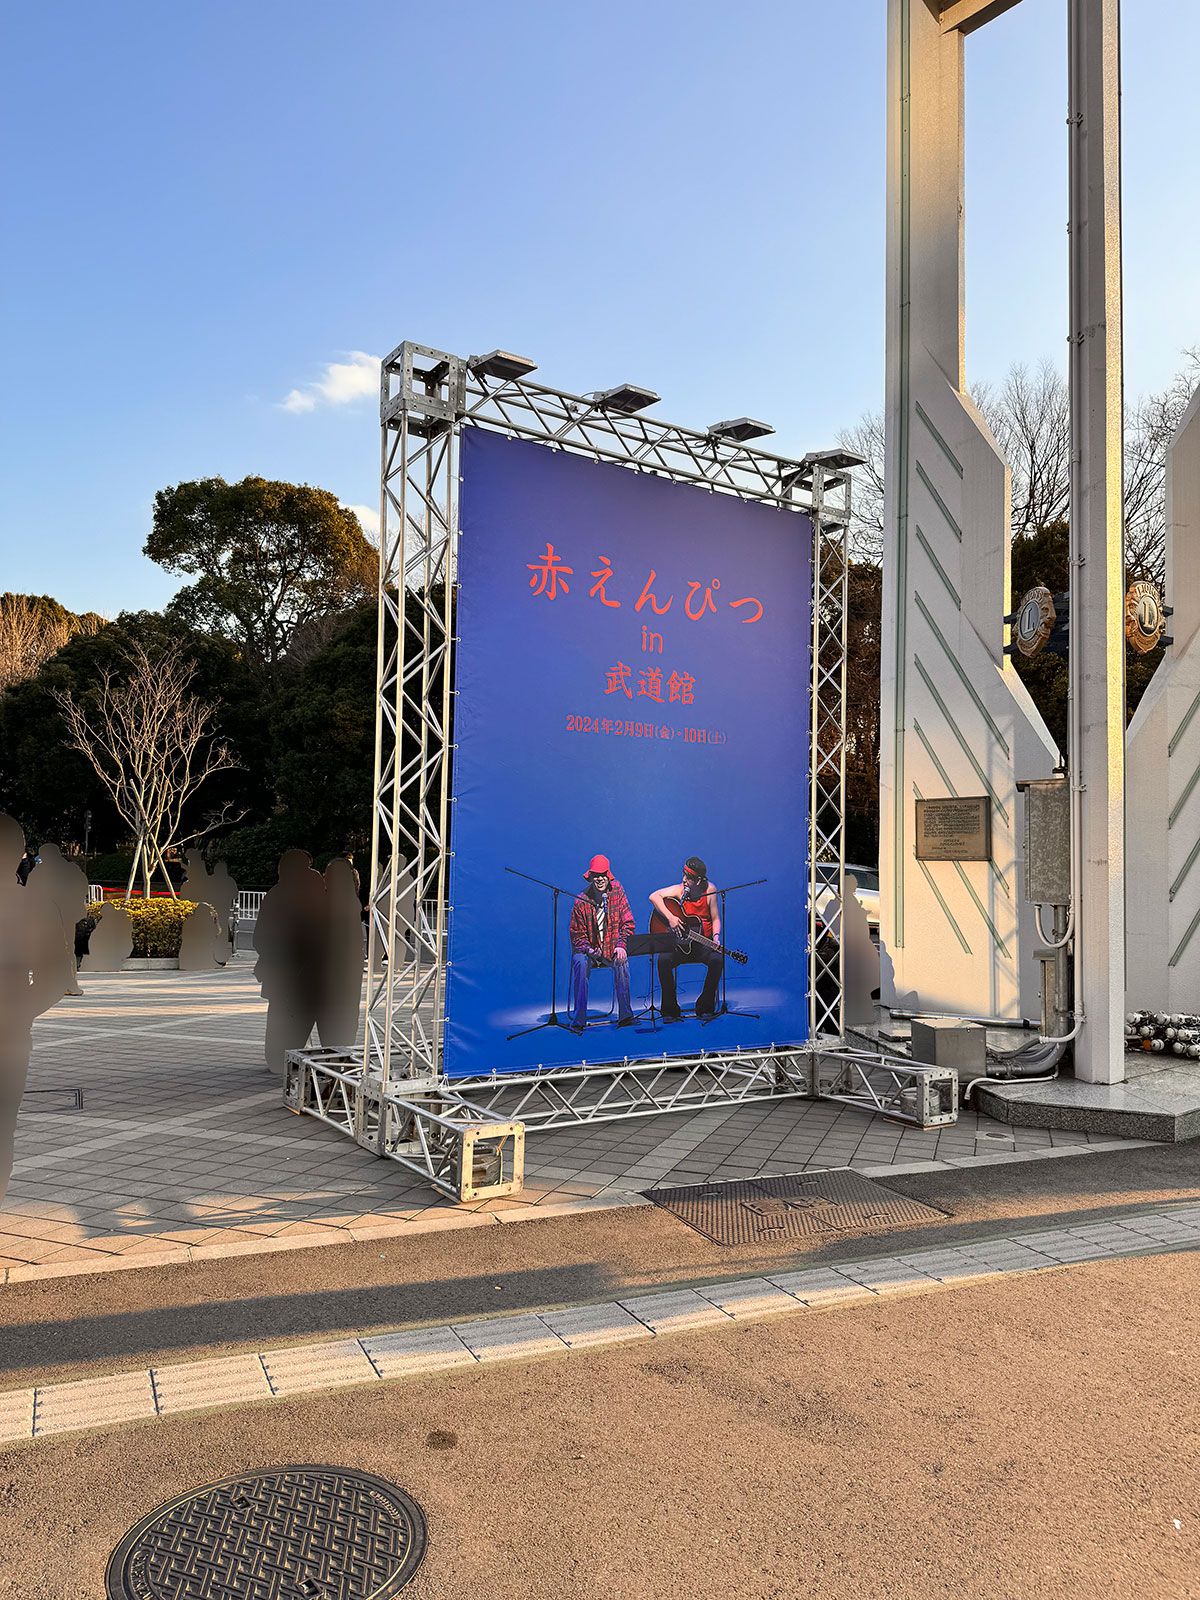 日本武道館の時計台脇に掲示された、赤えんぴつ in 武道館大型パネル。